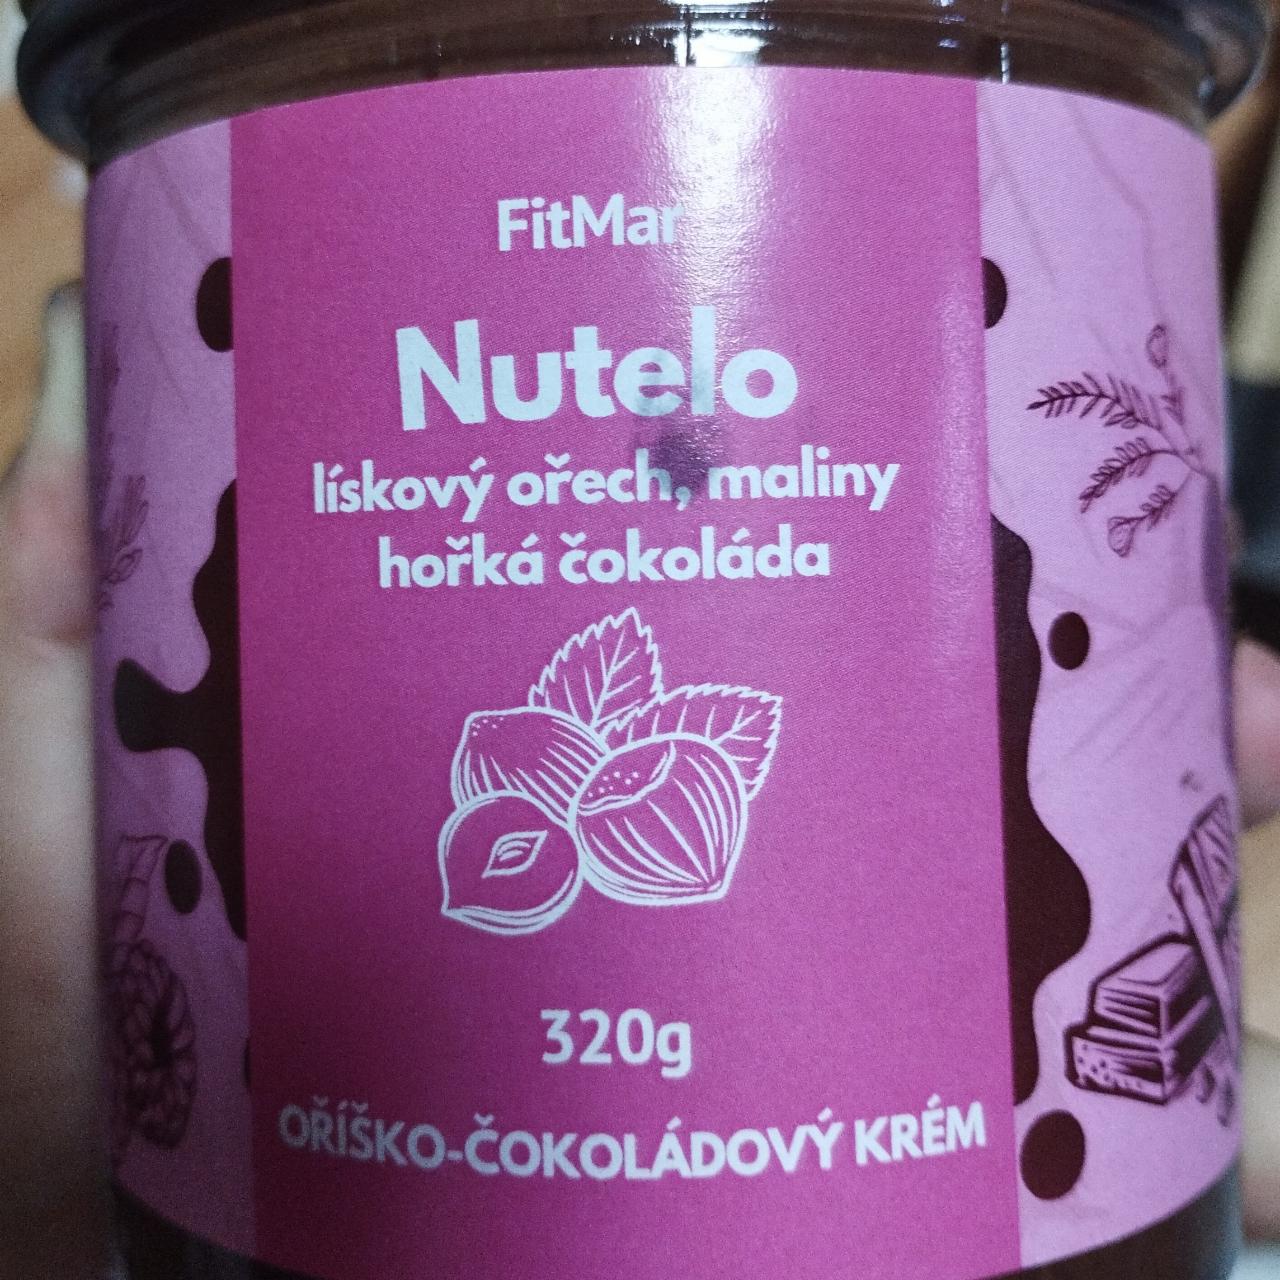 Fotografie - Nutelo lískový ořech, maliny, hořká čokoláda FitMar